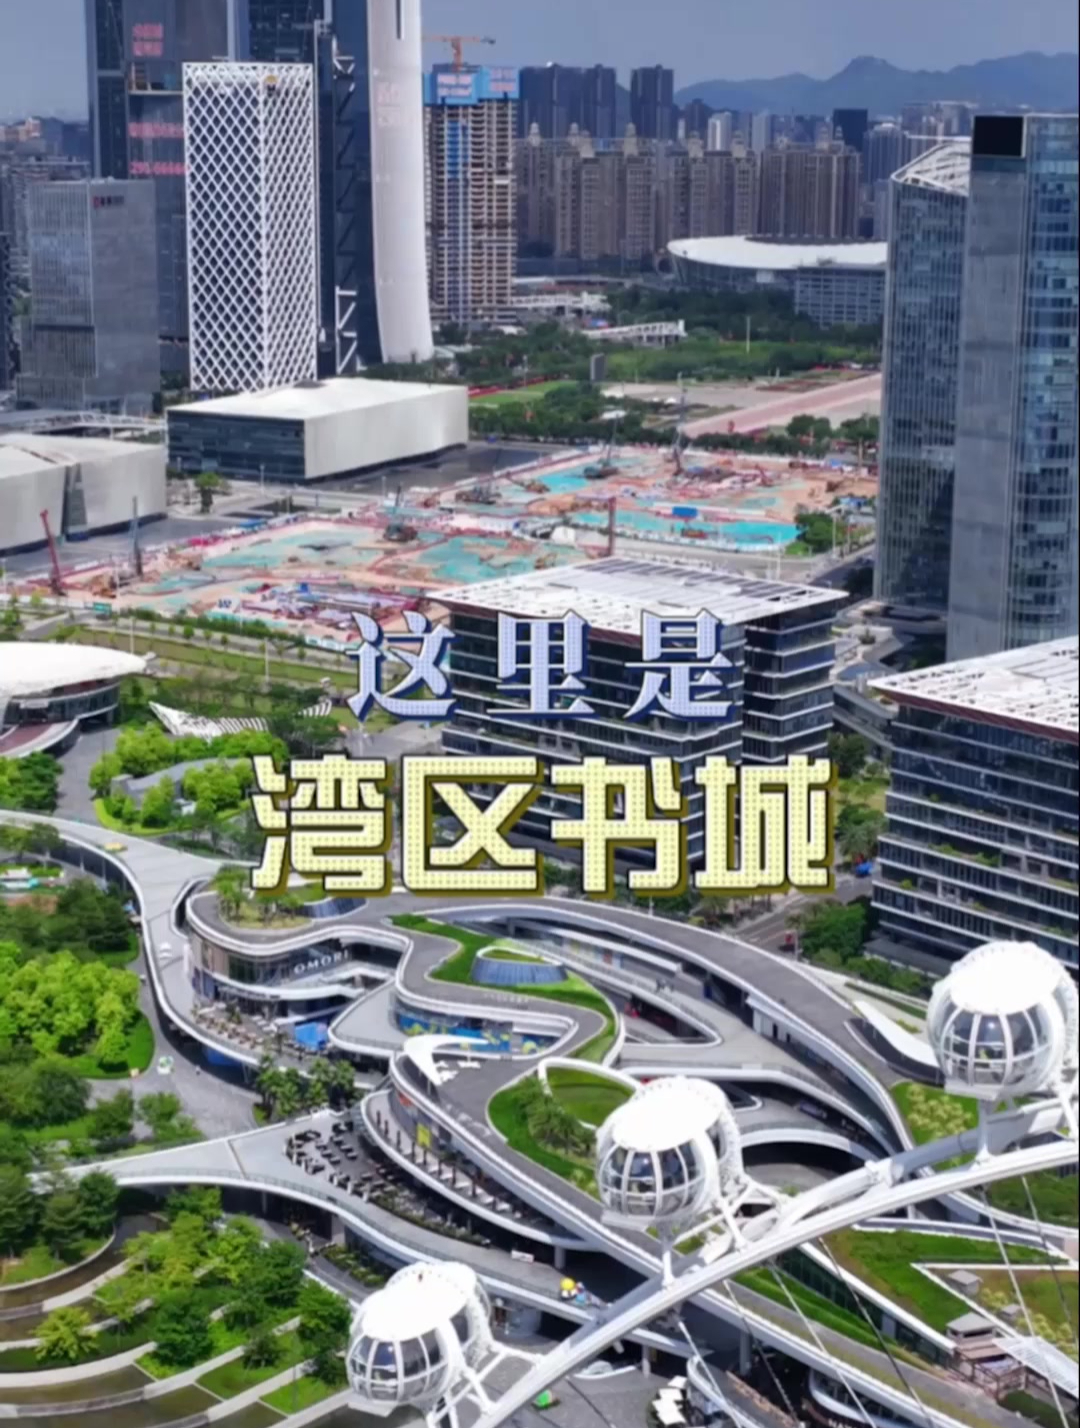 深圳市湾区书城正在宝安中心区建设,远观风景宜人